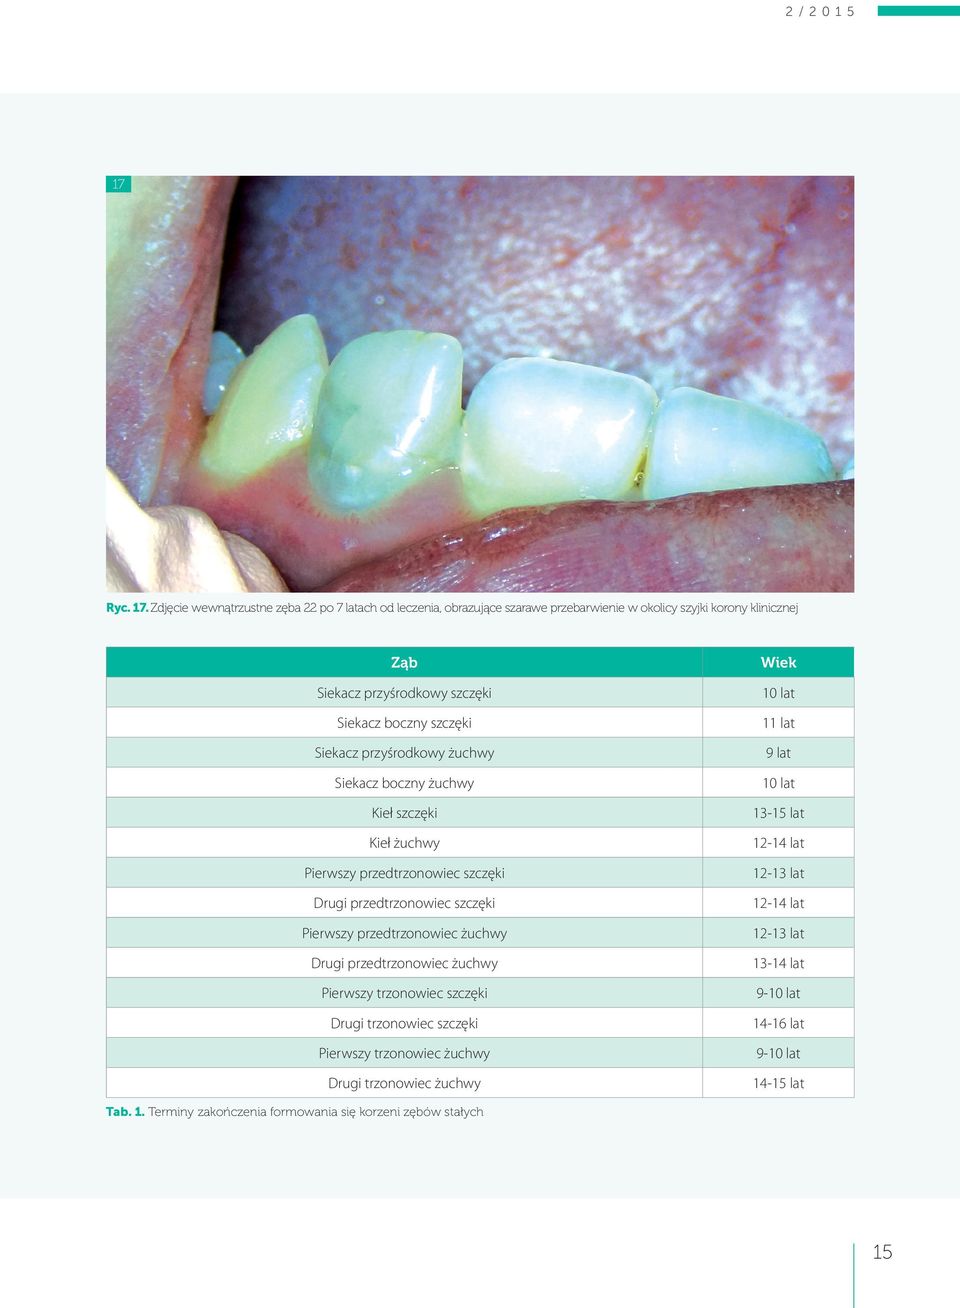 Zdjęcie wewnątrzustne zęba 22 po 7 latach od leczenia, obrazujące szarawe przebarwienie w okolicy szyjki korony klinicznej Ząb Siekacz przyśrodkowy szczęki Siekacz boczny